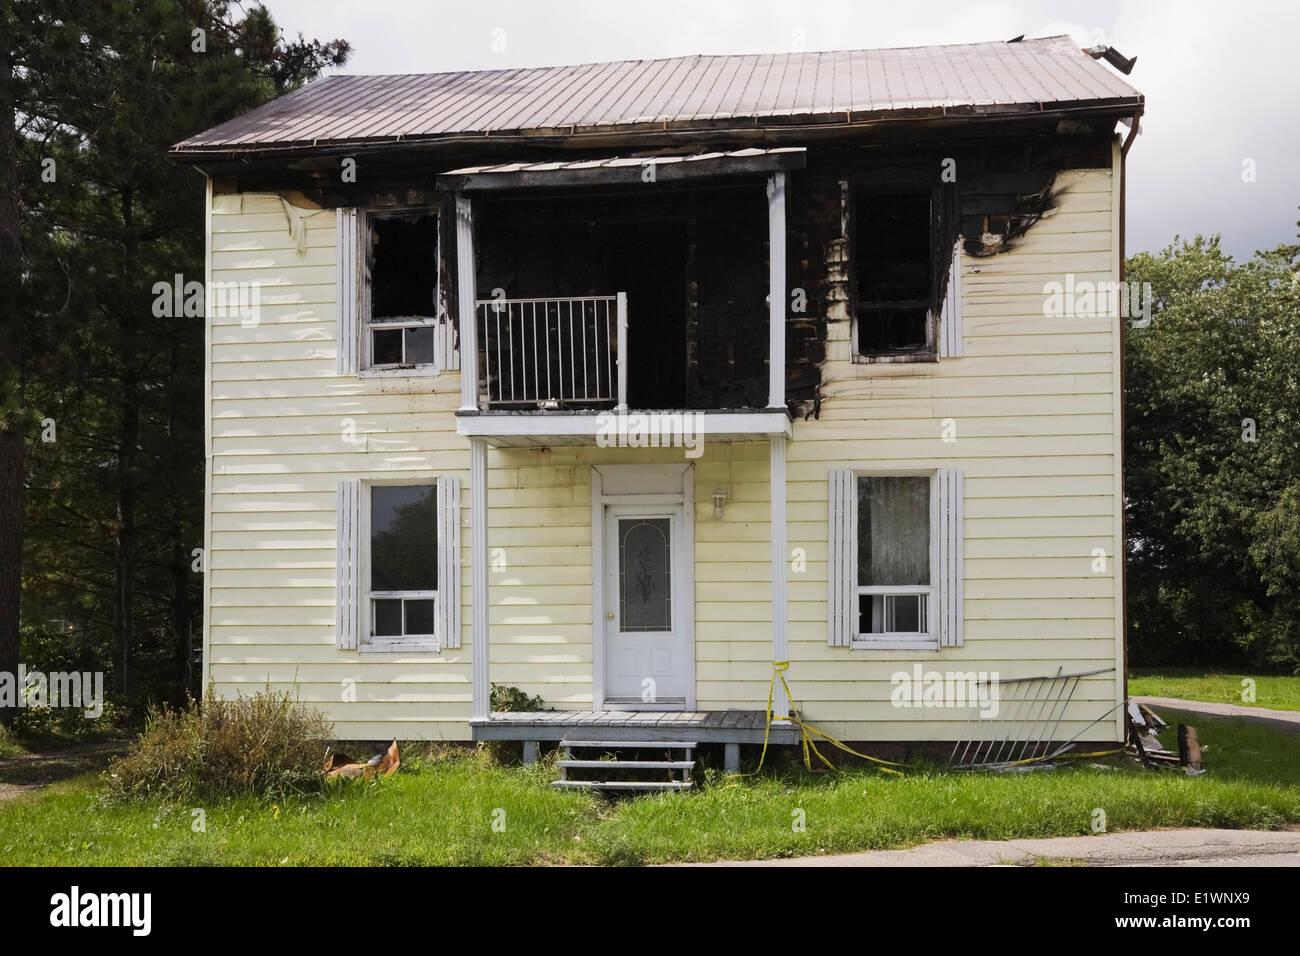 Accueil Résidentiel façade avec les dégâts causés par le feu, Québec, Canada Banque D'Images